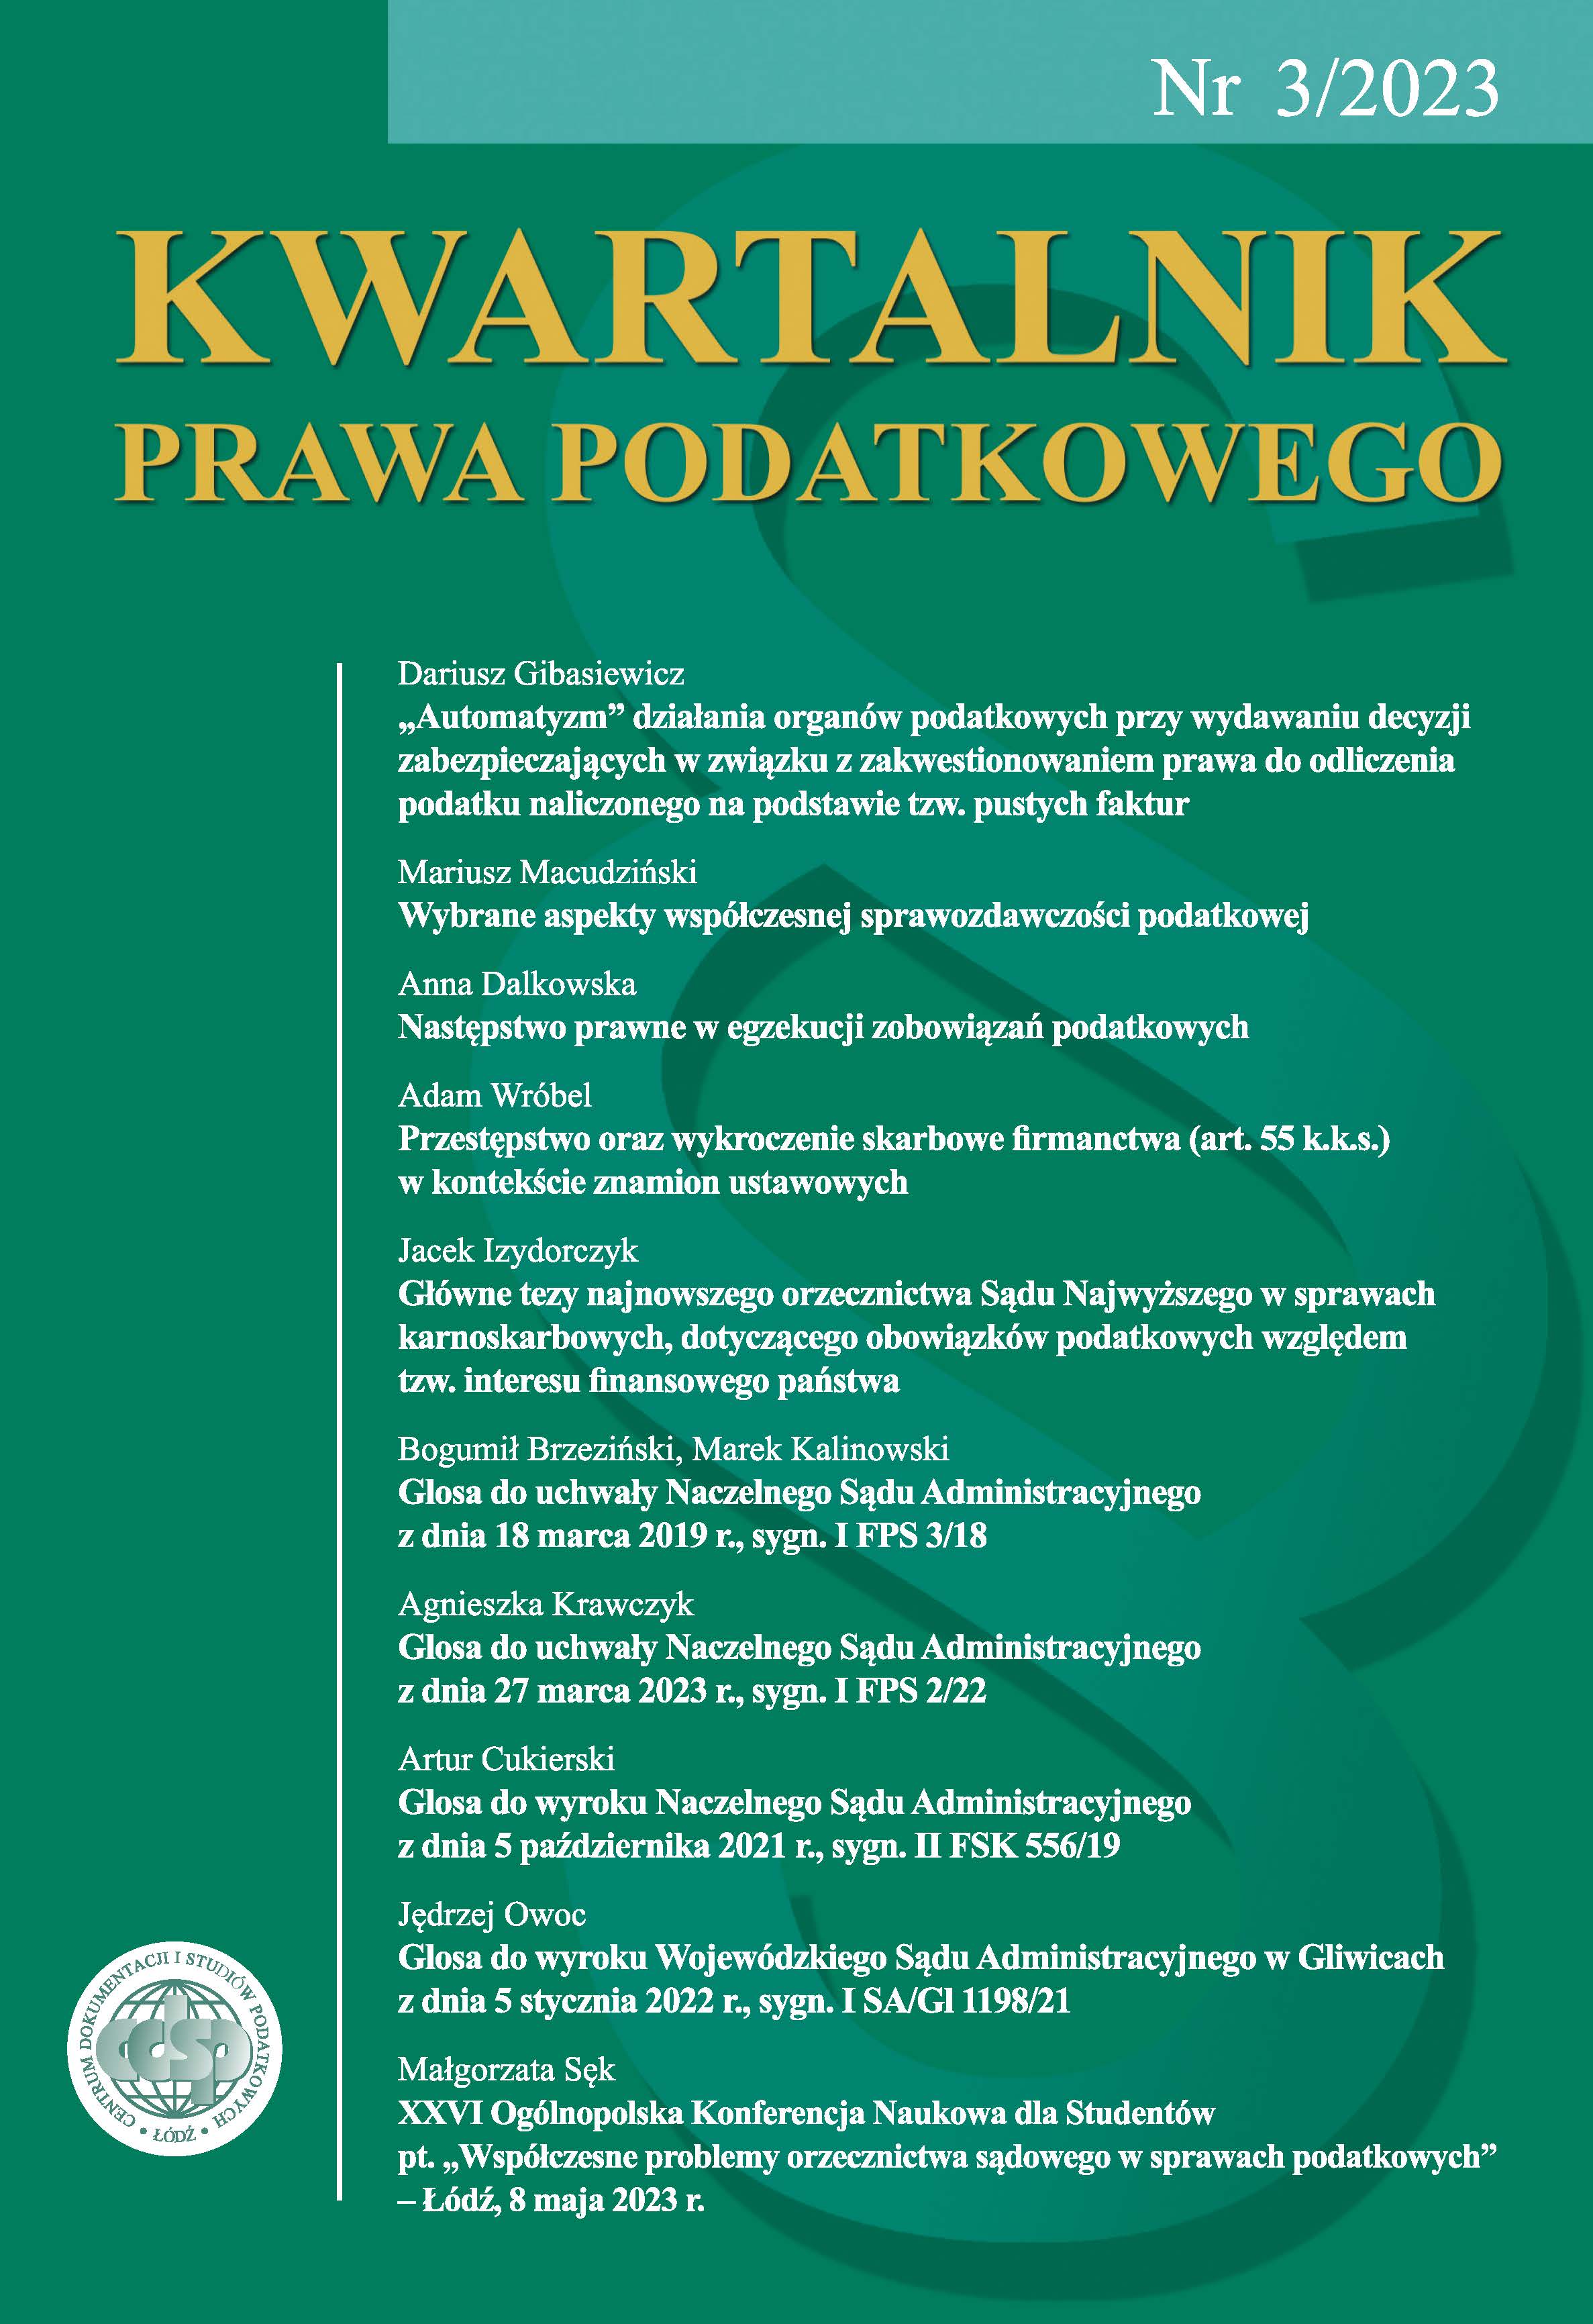 XXVI National Scientific Conference for Students: „Współczesne problemy orzecznictwa sądowego w sprawach podatkowych”, Łódź, May 8, 2023 Cover Image